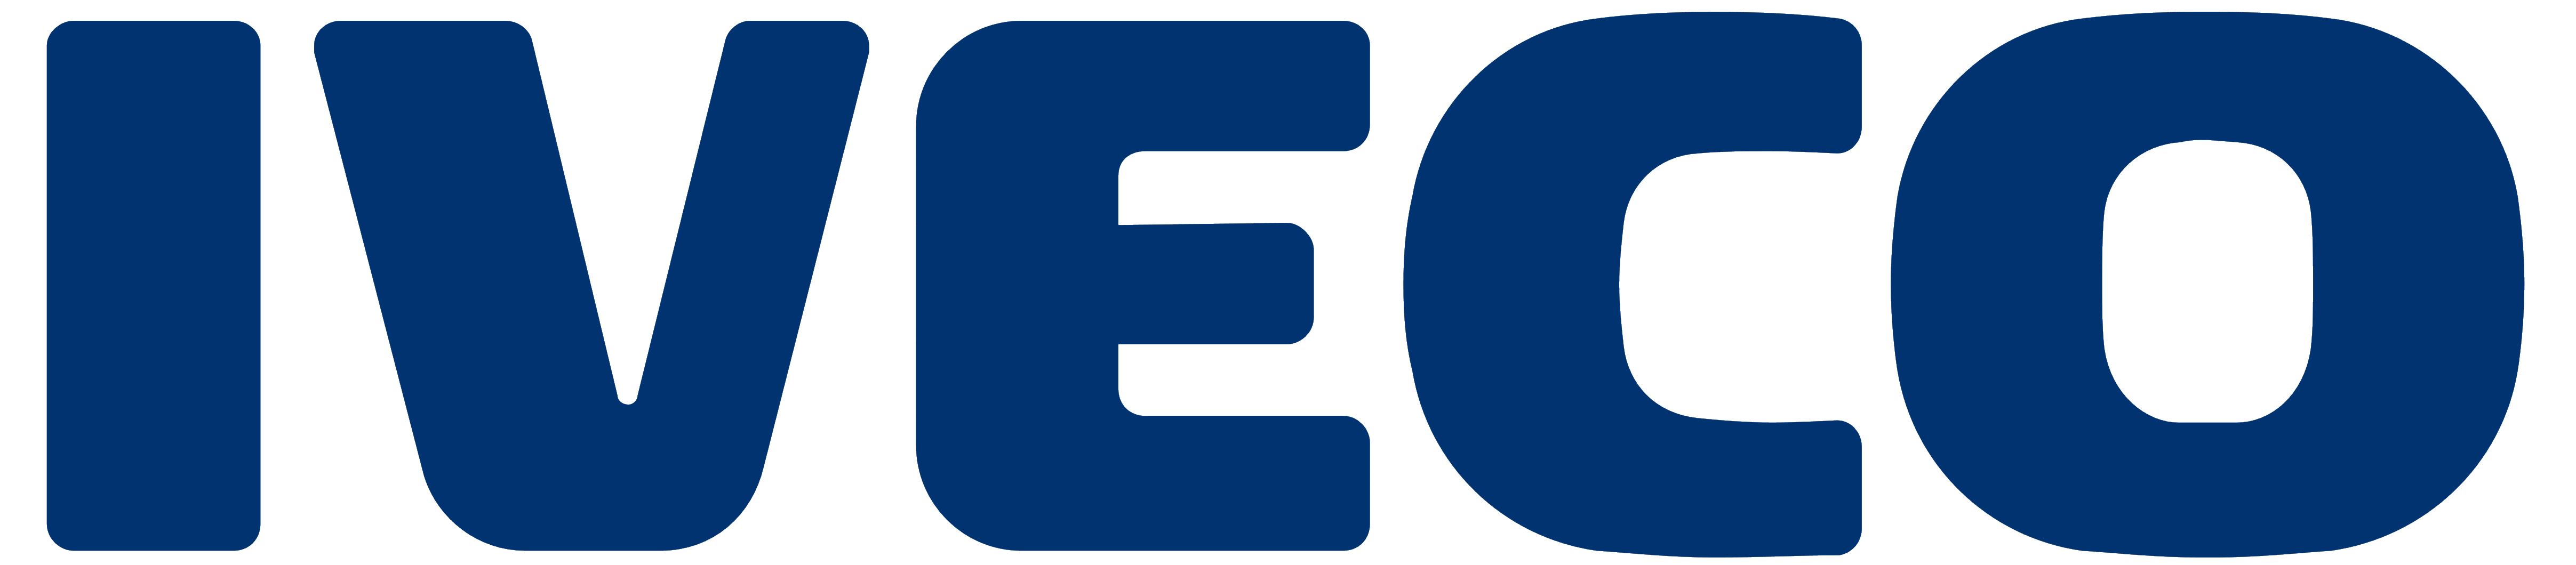 Iveco Logo - Iveco – Logos Download